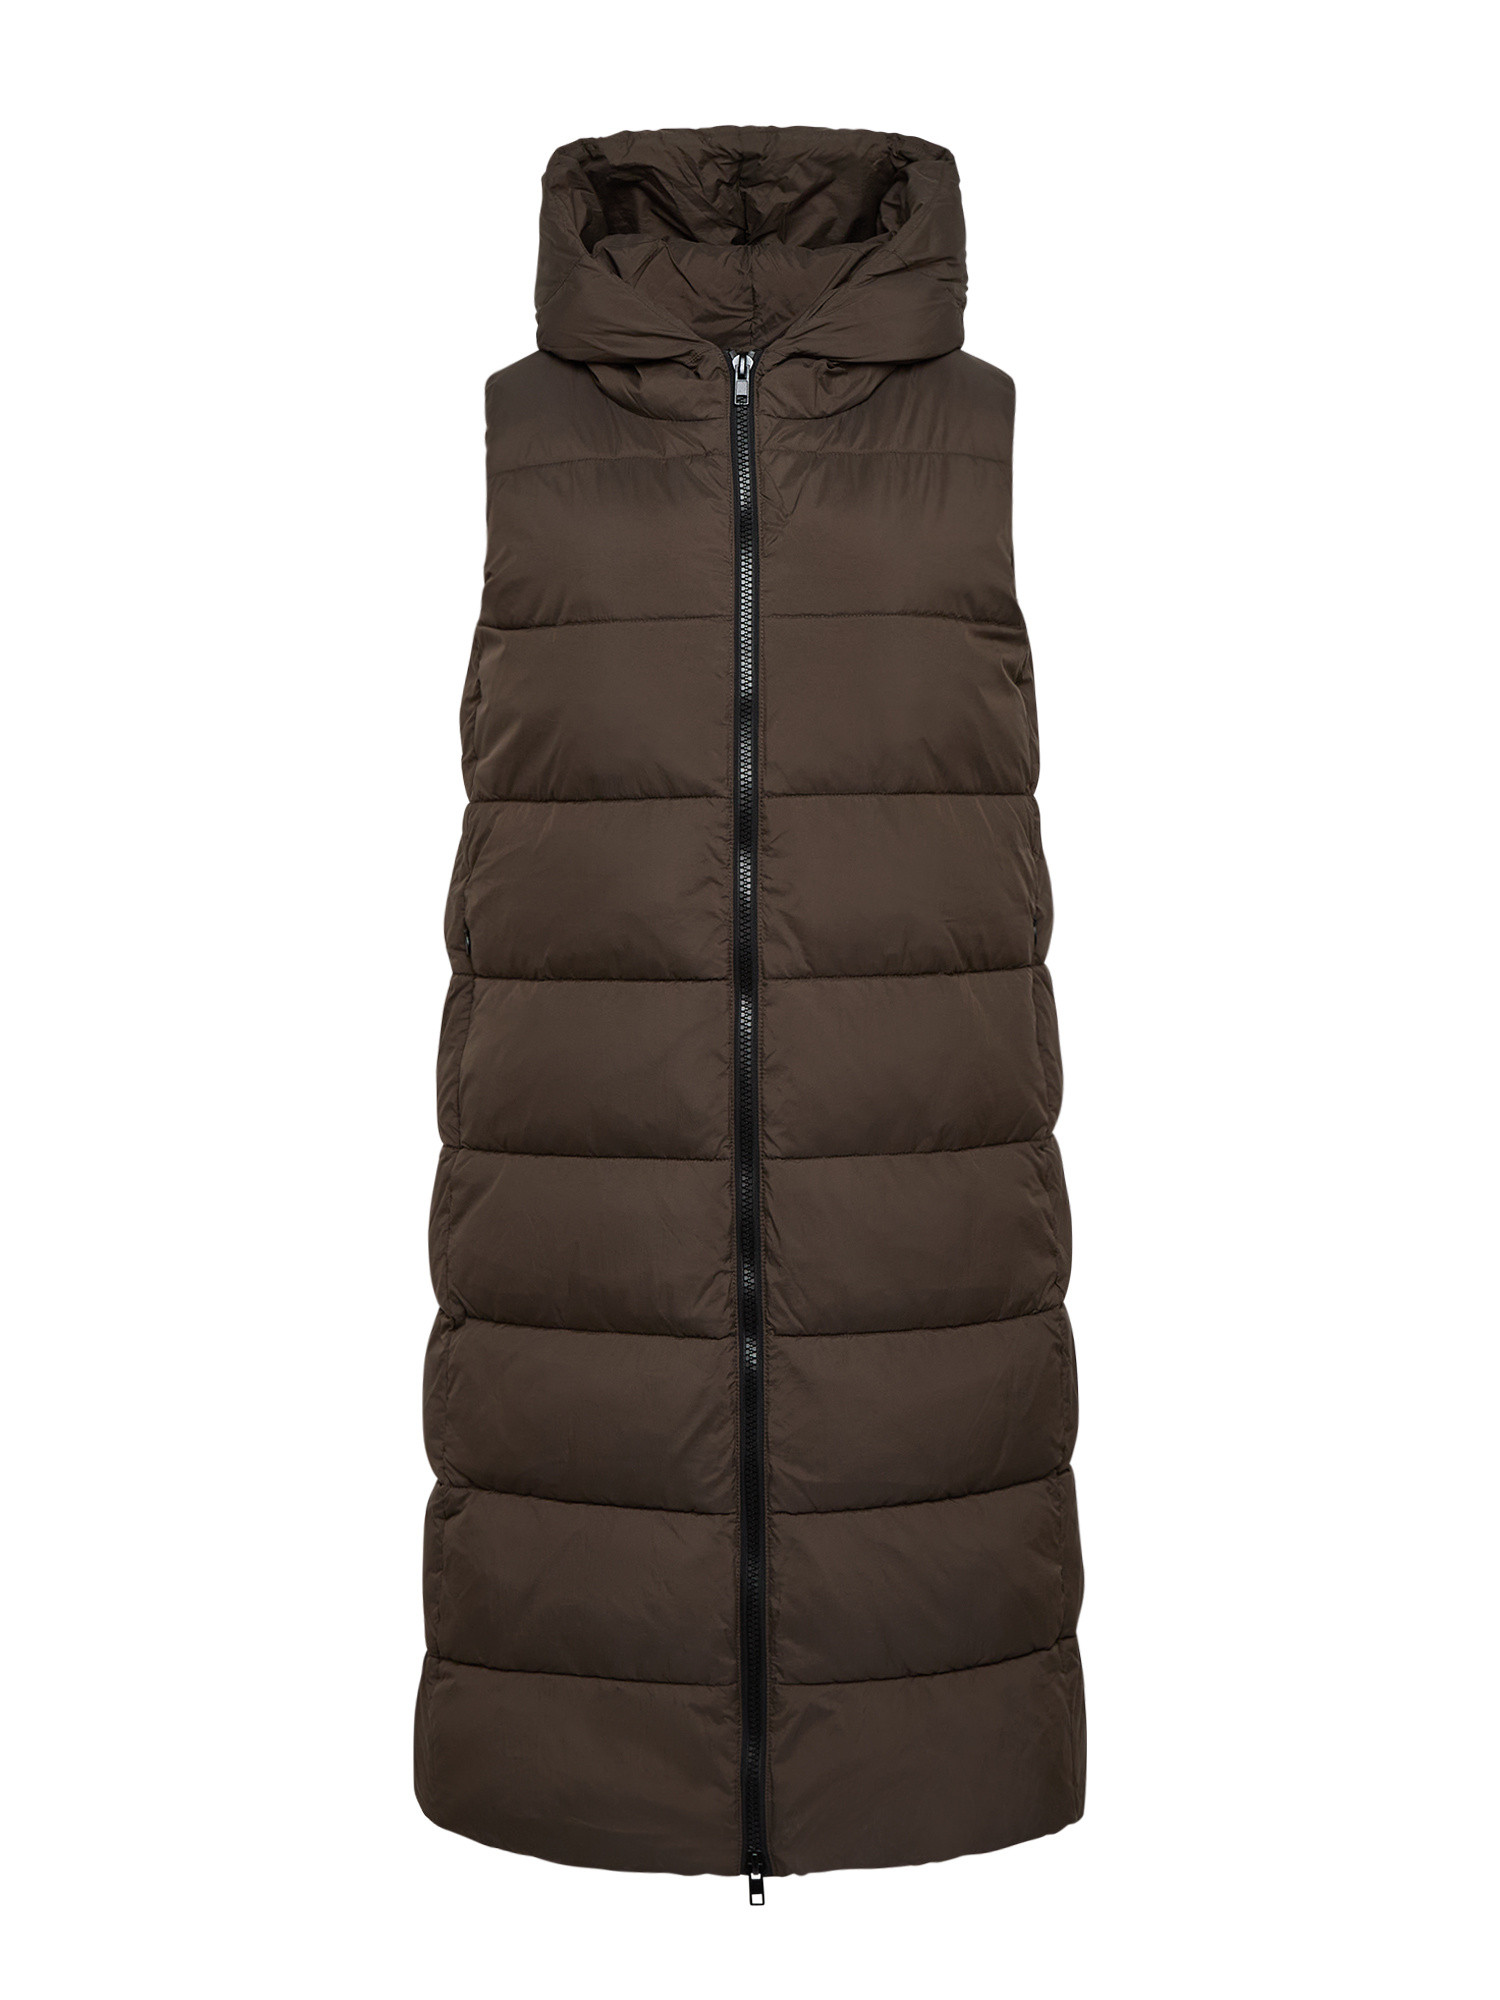 Canadian - Agathe vest, Olive Green, large image number 0